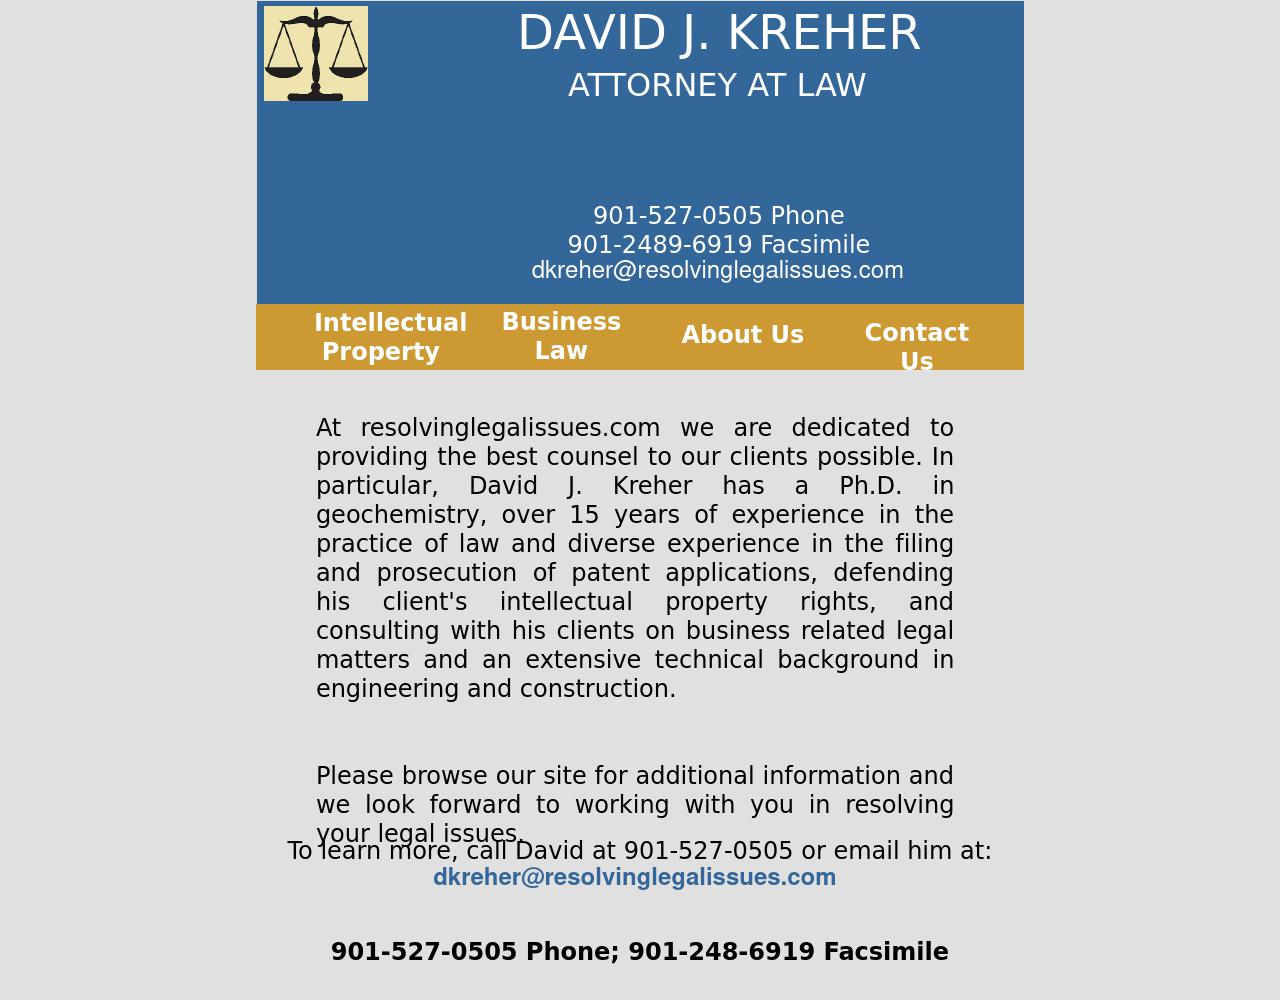 David J. Kreher, Attorney at Law - Memphis TN Lawyers